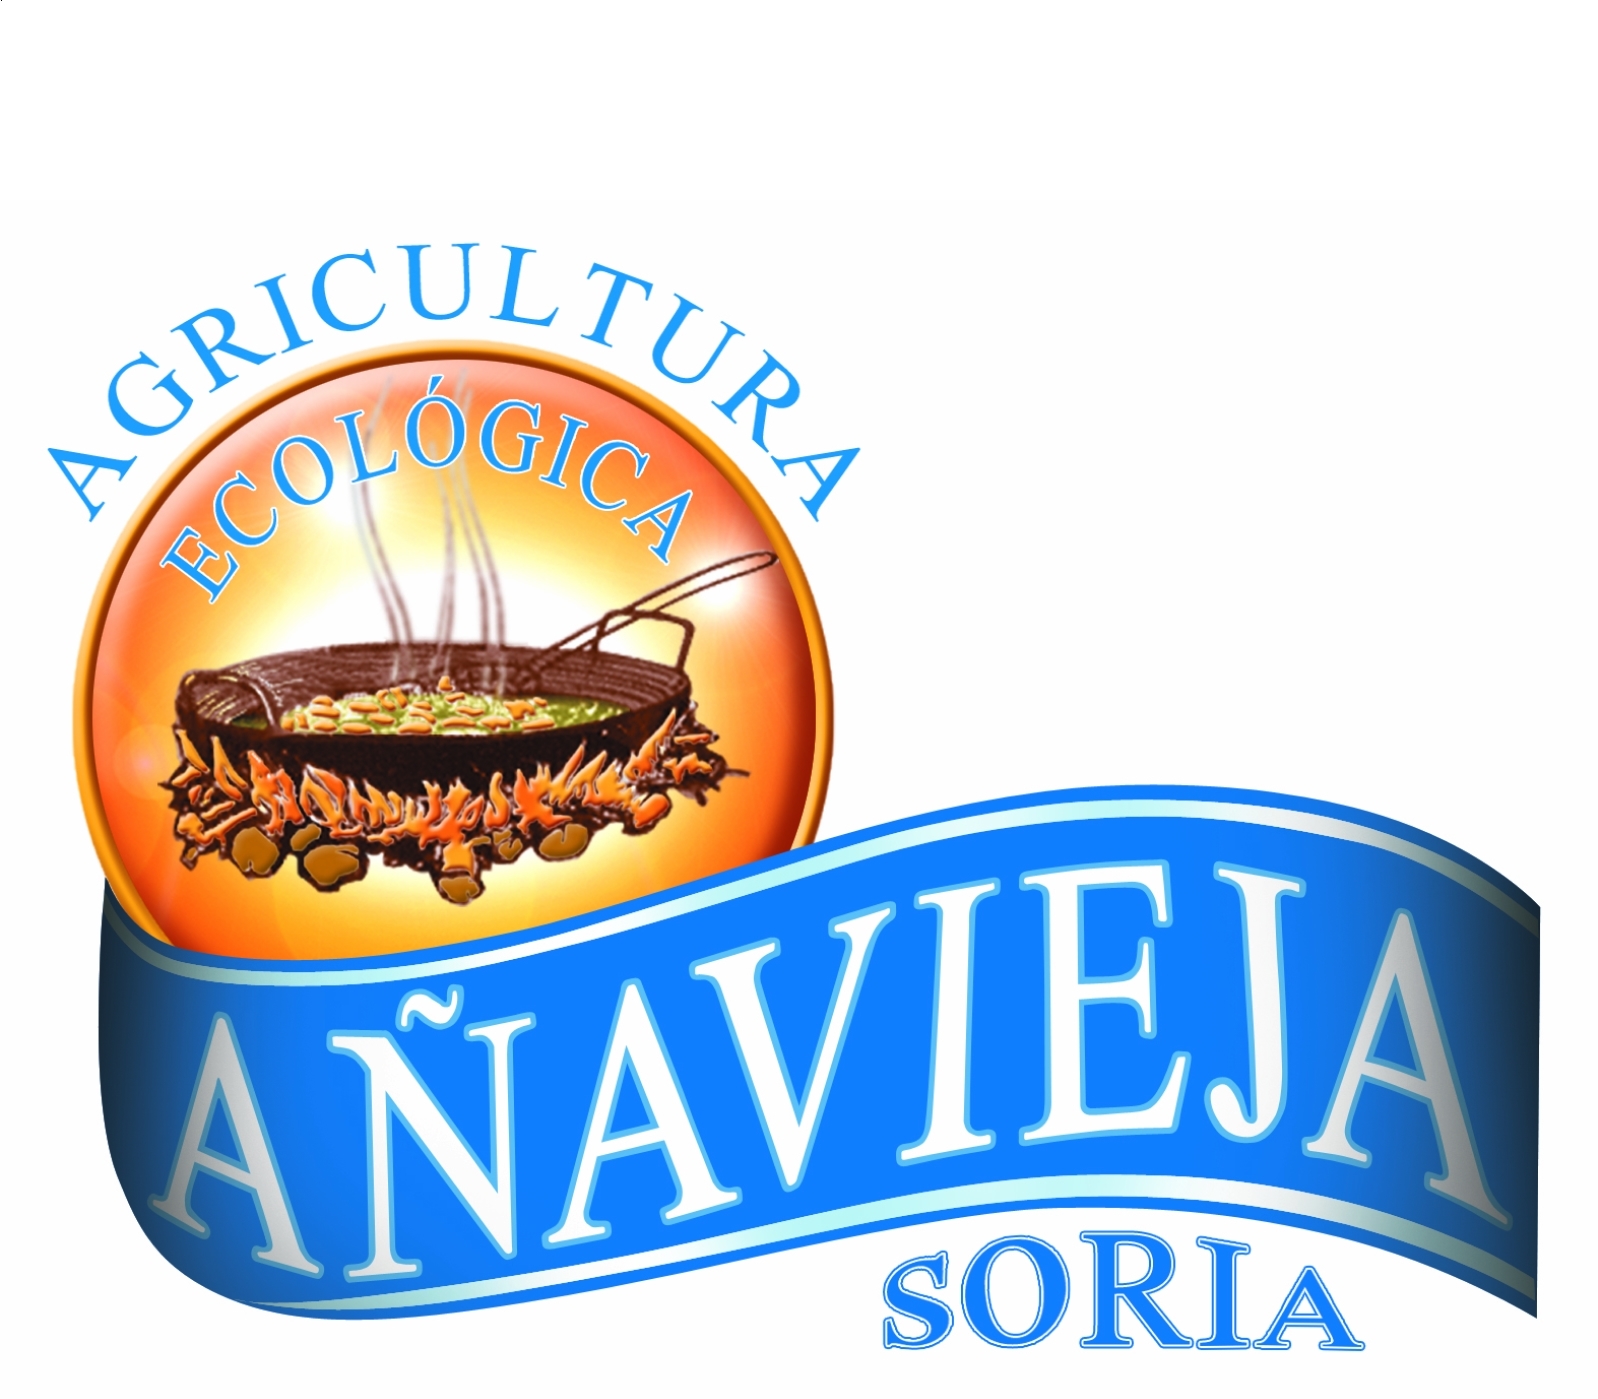 Aperitivos de Añavieja- Palomitas ecológicas fritas en Aceite de Oliva Virgen Extra 50g, 12uds